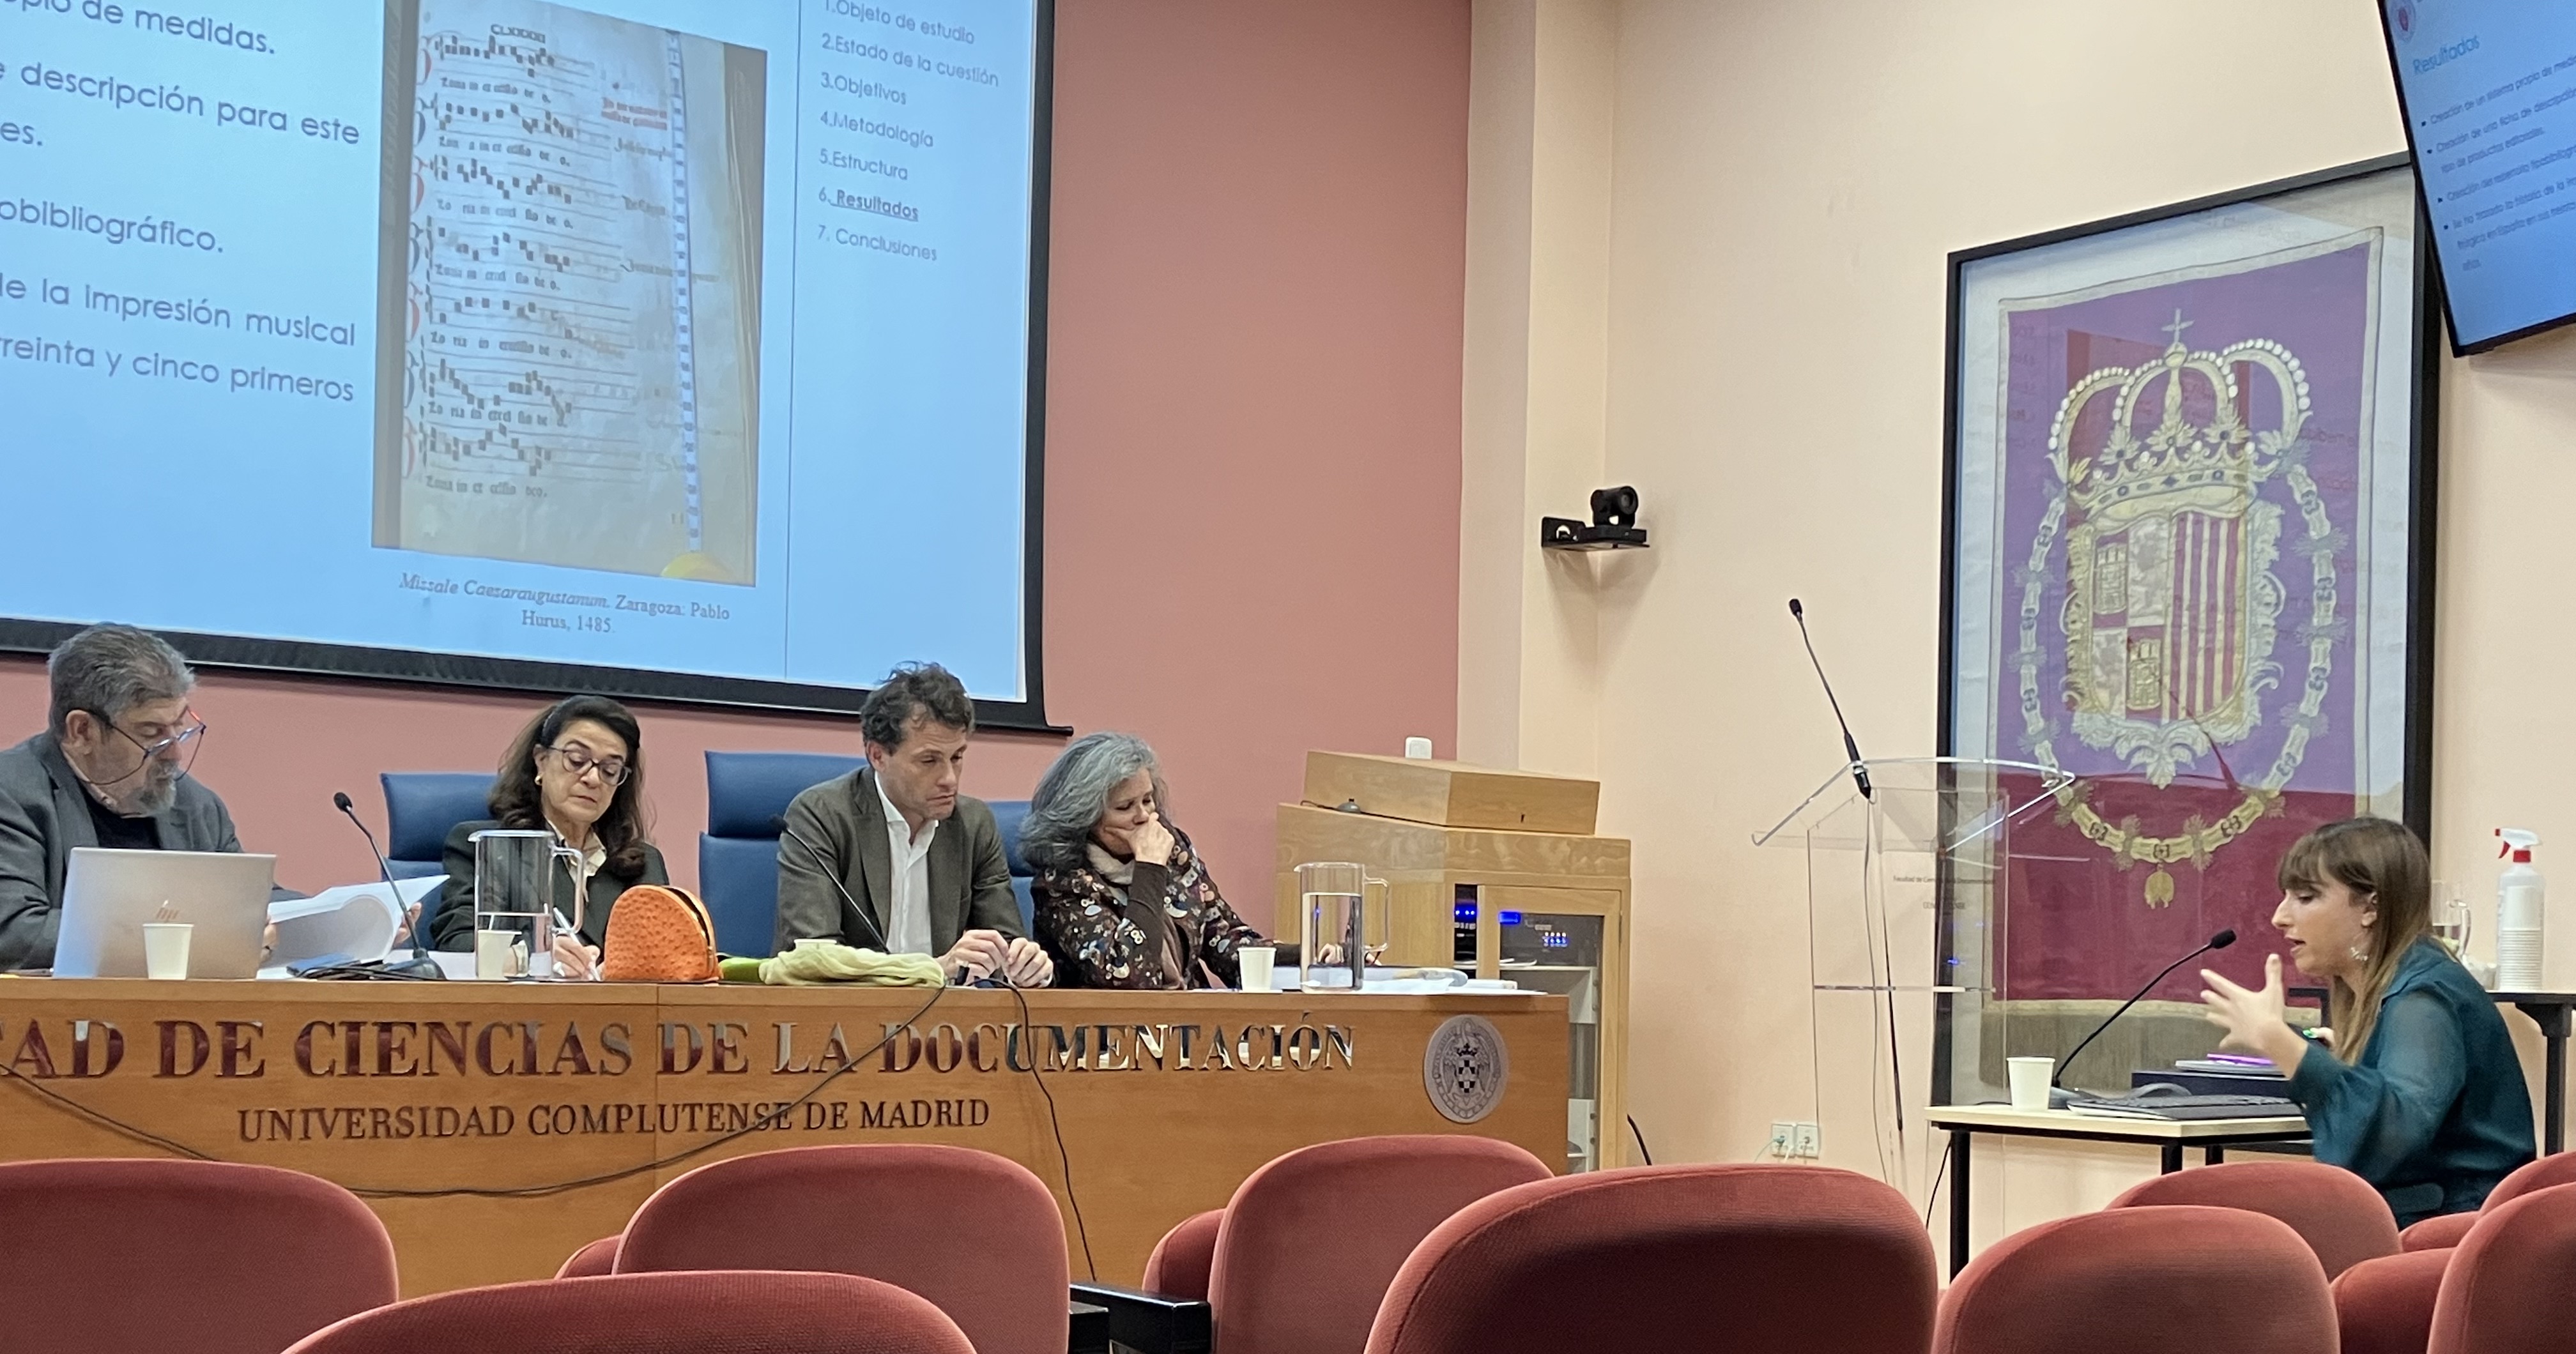 Alicia López Carral defendió su tesis doctoral  obteniendo la calificación de sobresaliente, "El libro litúrgico y la imprenta musical en España hasta 1520", bajo la co-dirección de Therese Martin (IH)